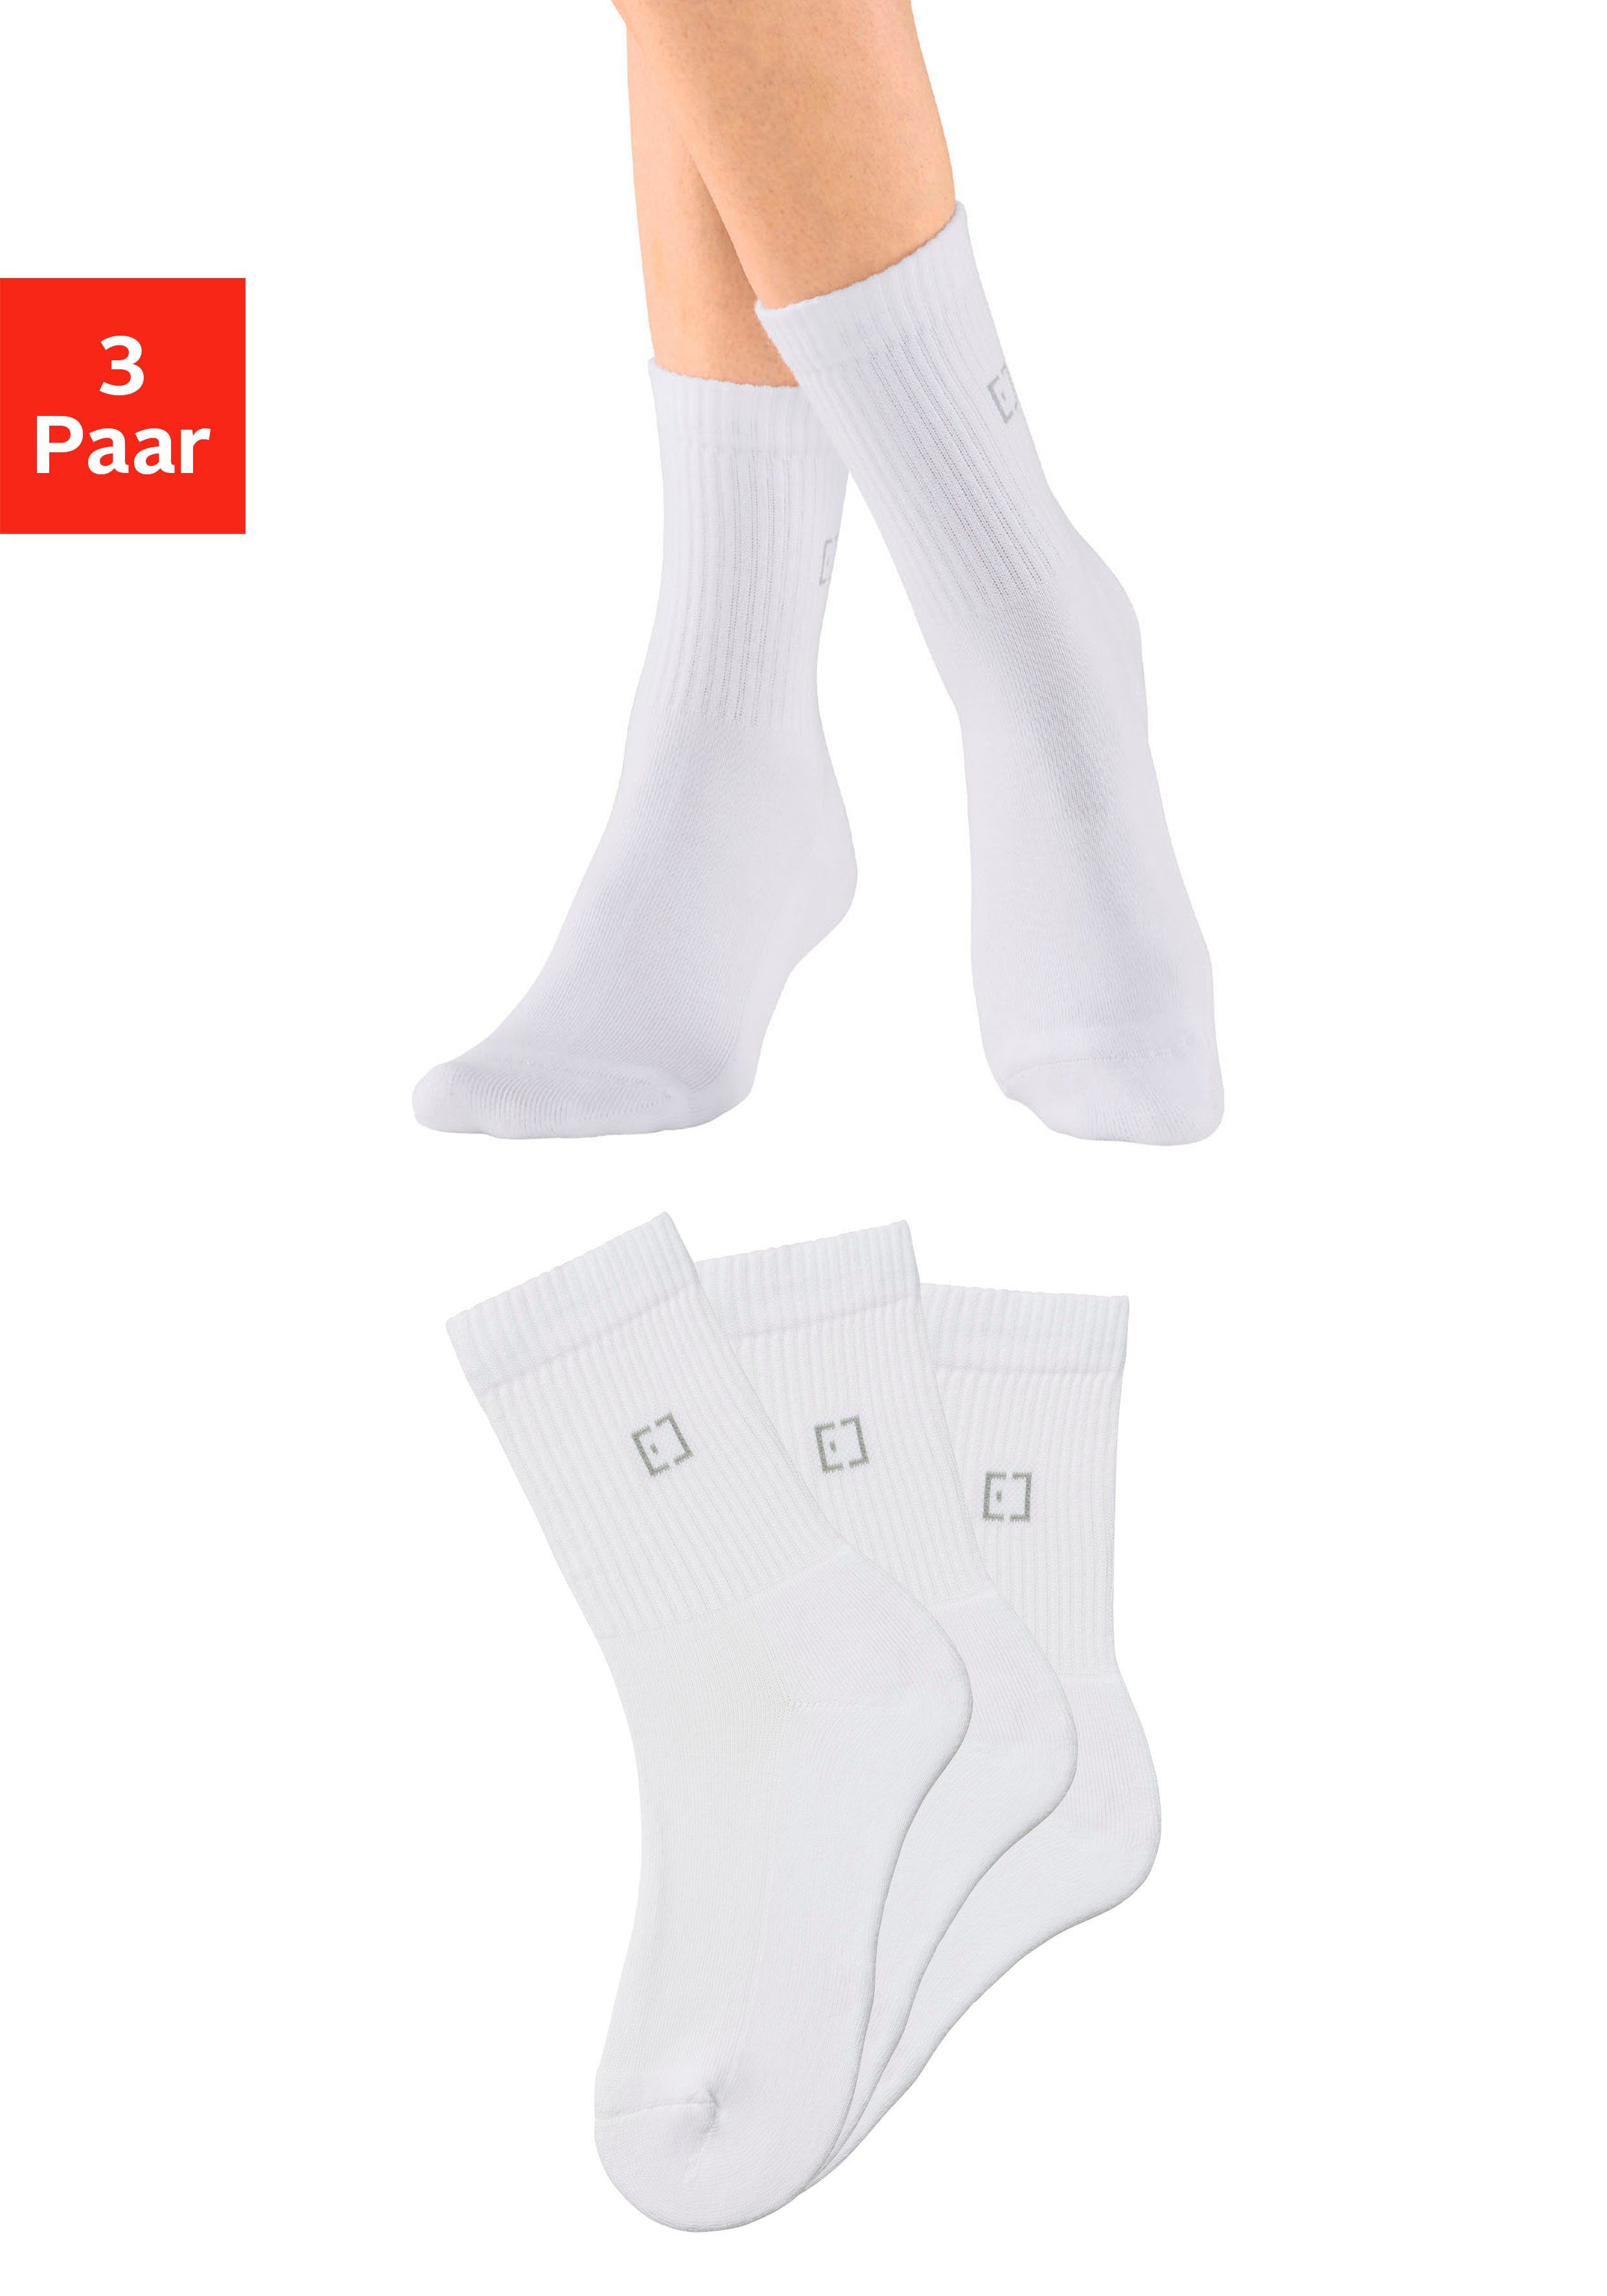 Elbsand Socken (3-Paar) mit eingestricktem Markenlogo und Schriftzug 3x weiß